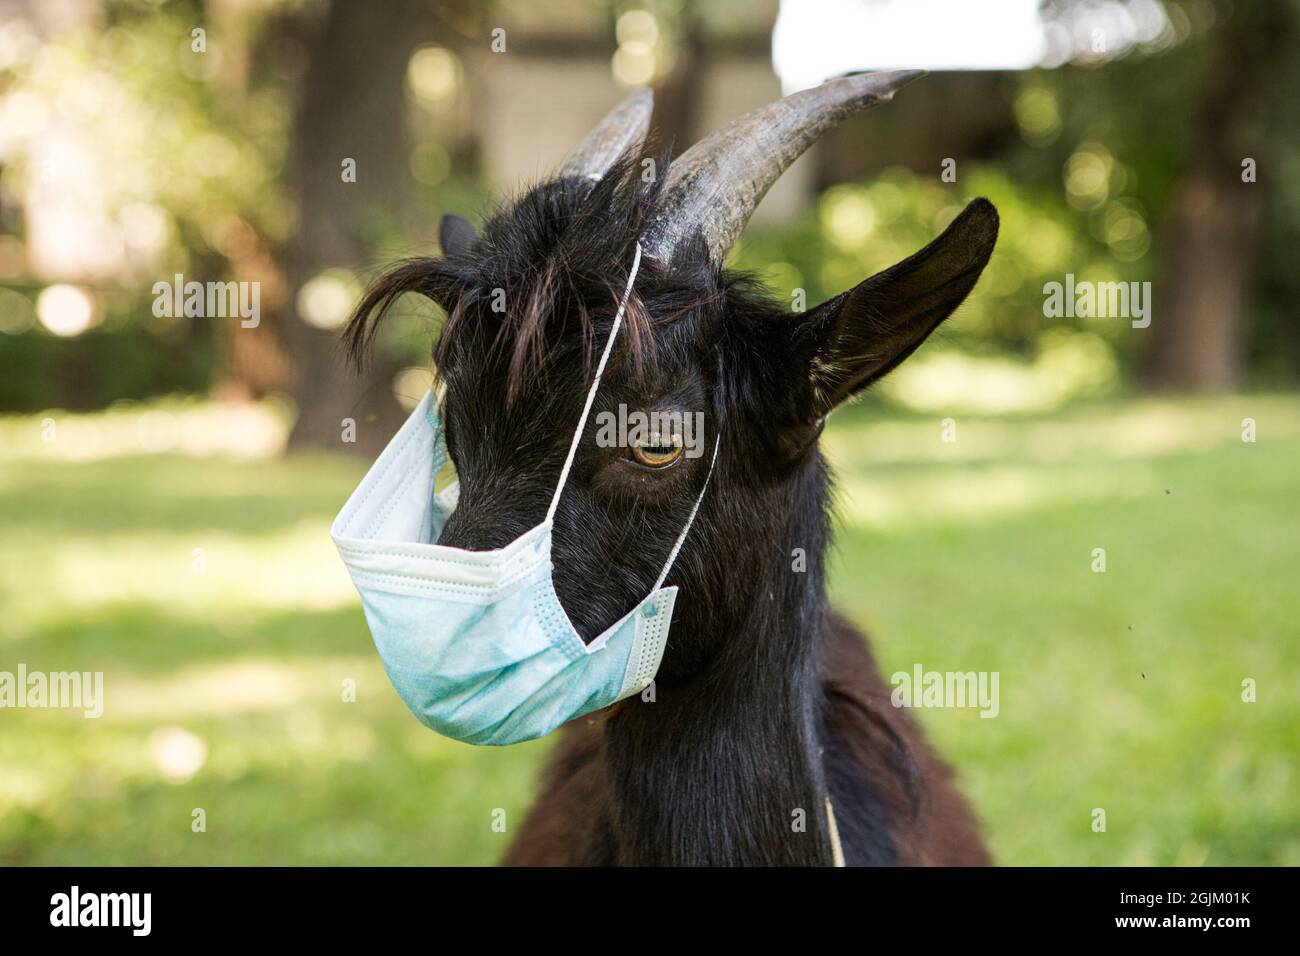 Portrait d'un gamin noir camerounais dans un masque médical. La chèvre est en quarantaine. Humour pendant la pandémie du coronavirus. Banque D'Images